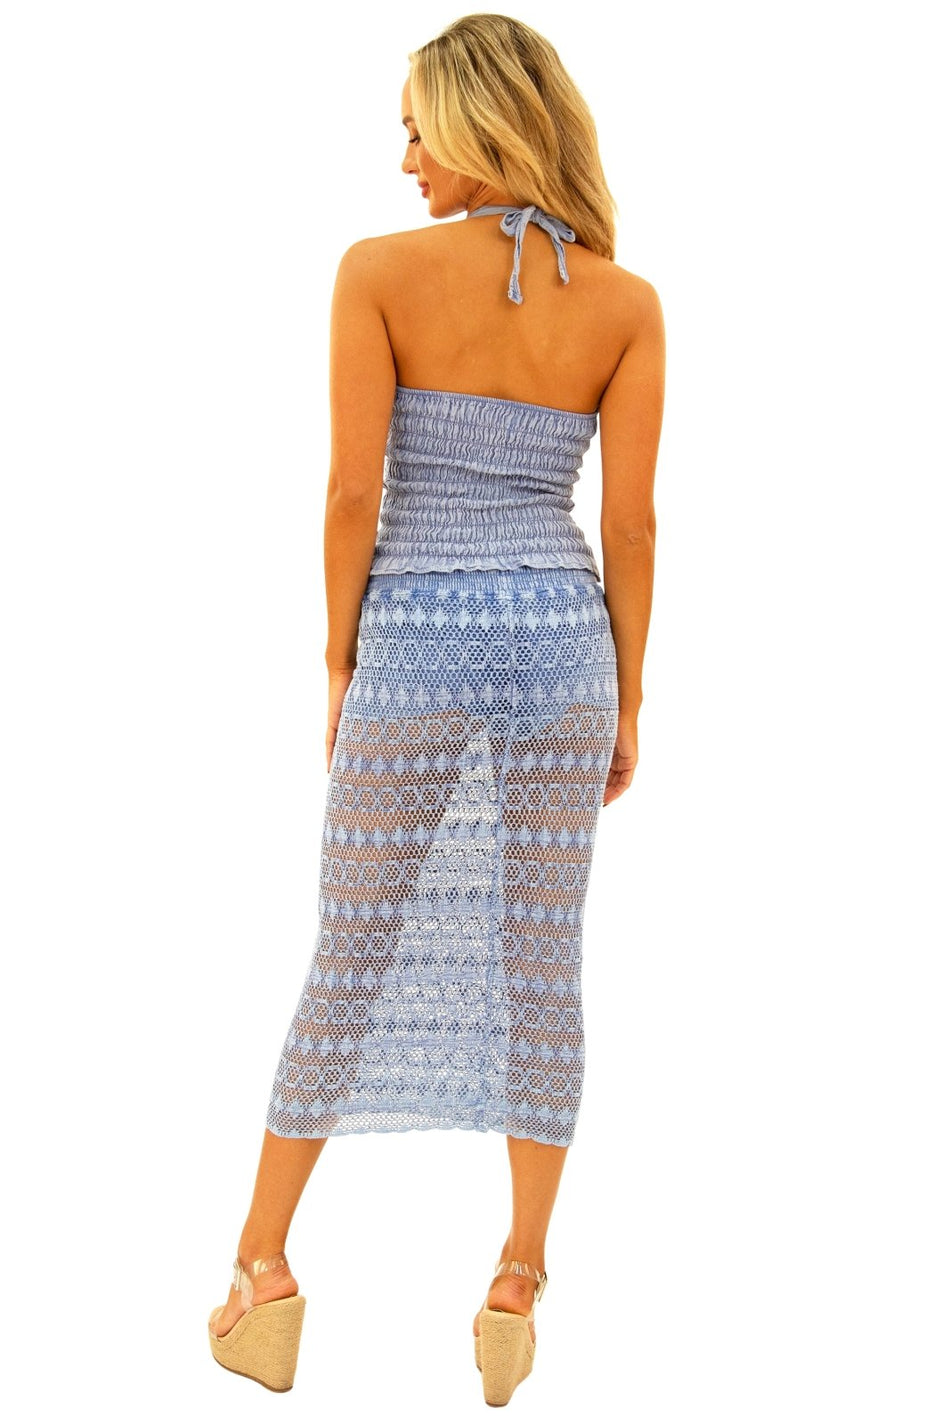 100% Cotton 'Oceane' Crochet Maxi Skort Blue - Seaspice Resort Wear